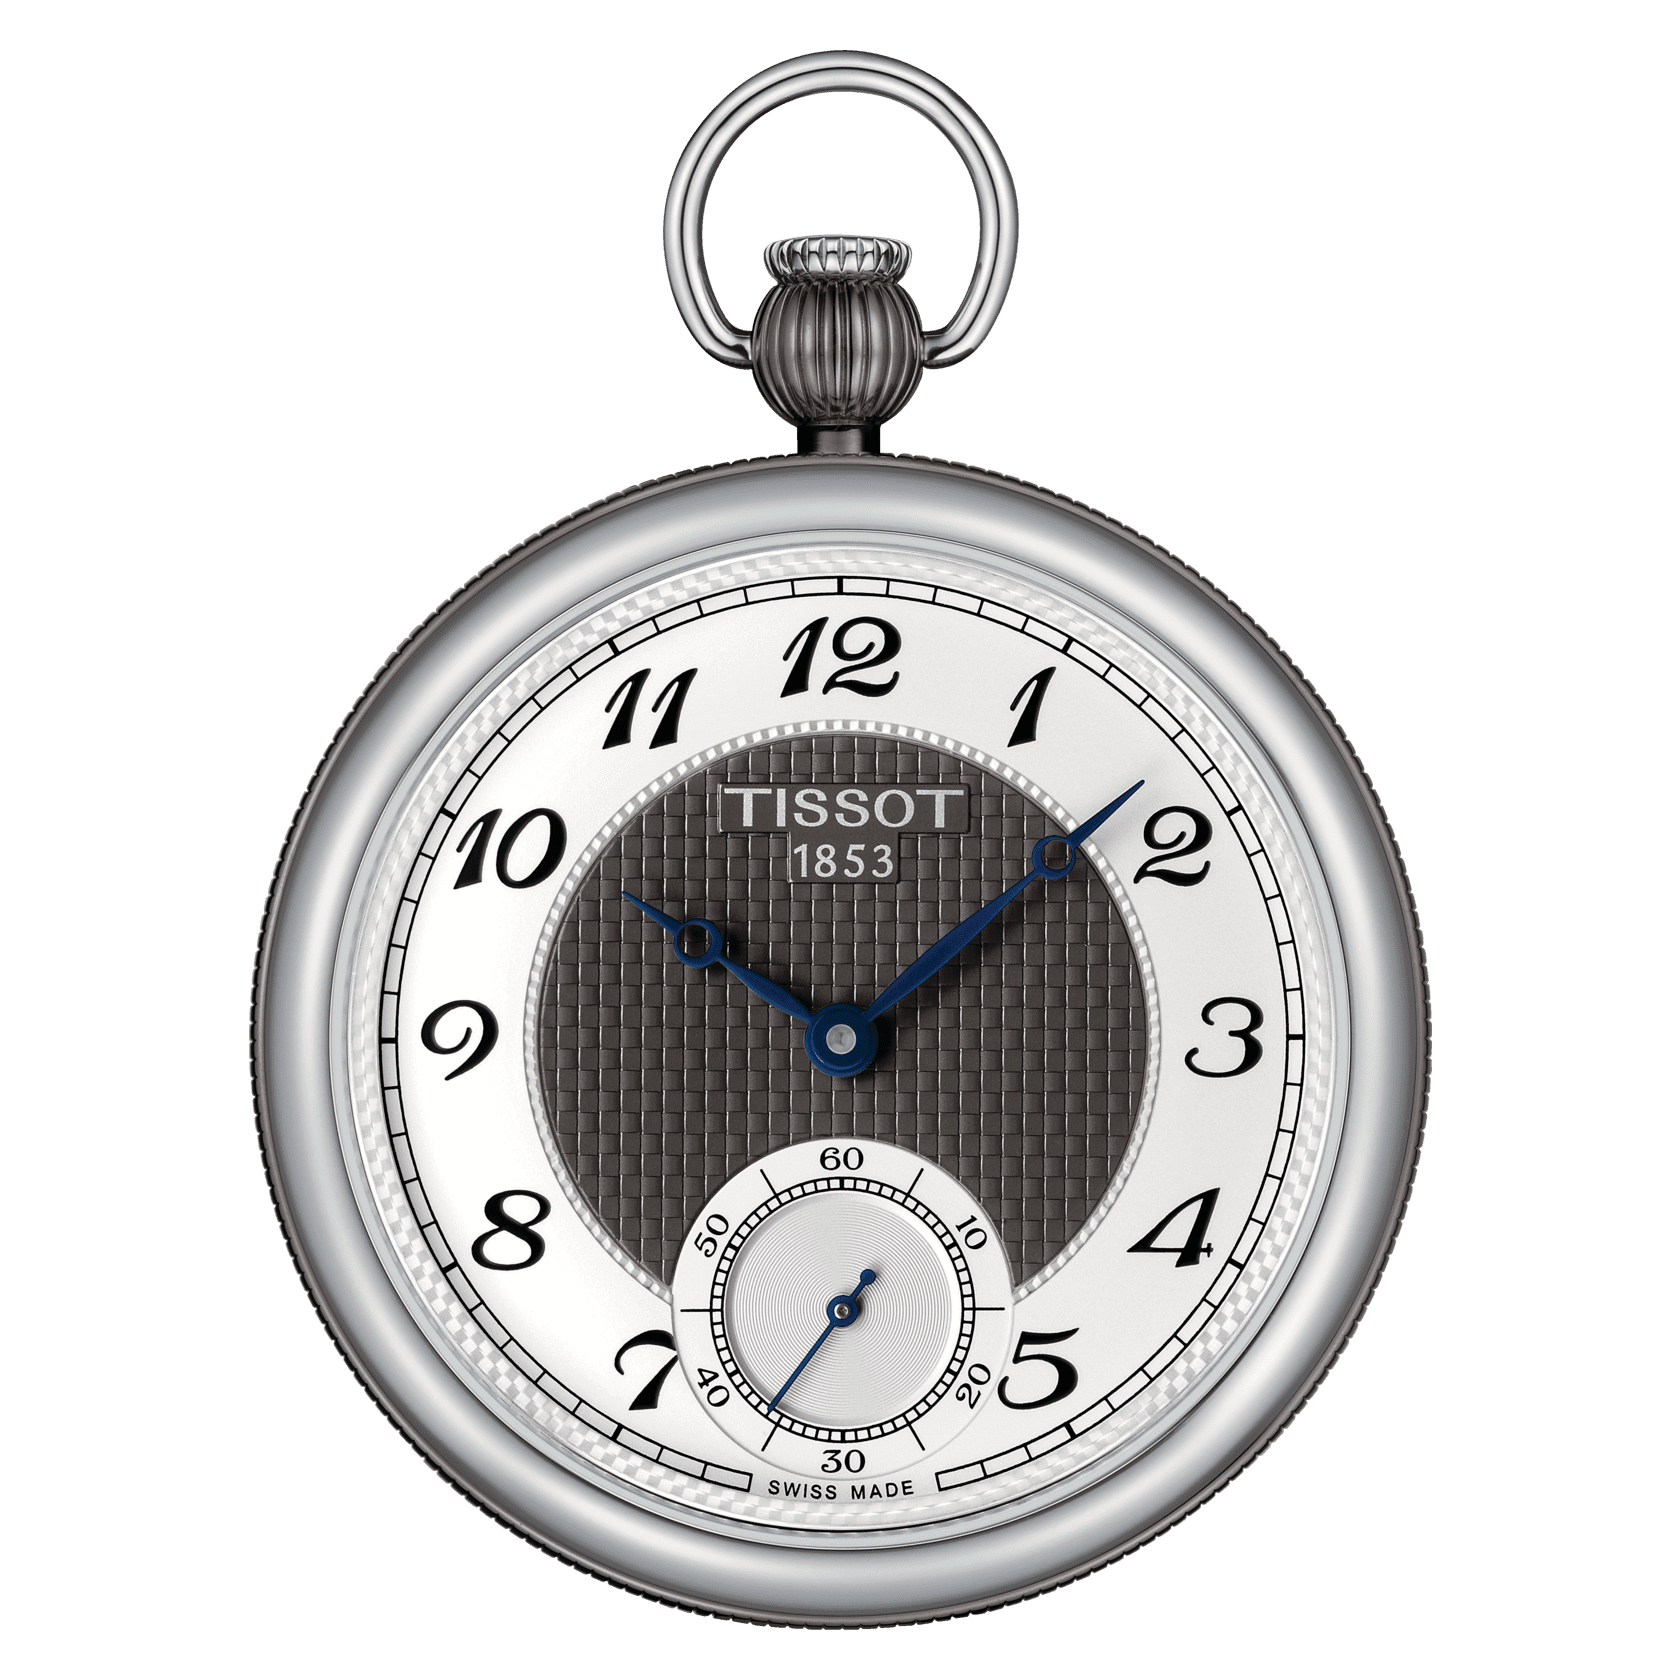 Replica Audemar Piguet Watches